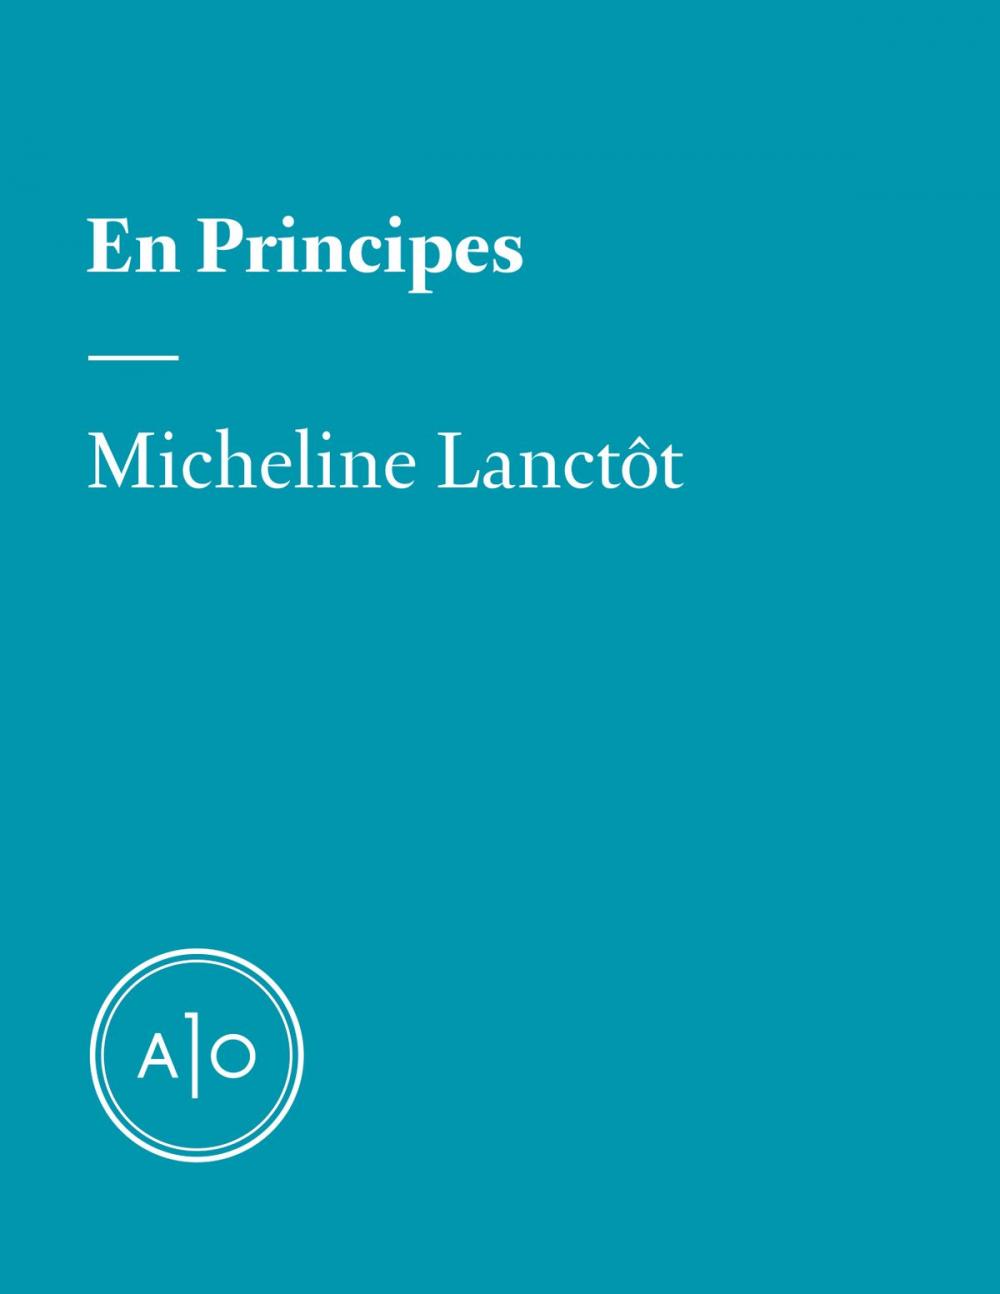 Big bigCover of En principes: Micheline Lanctôt